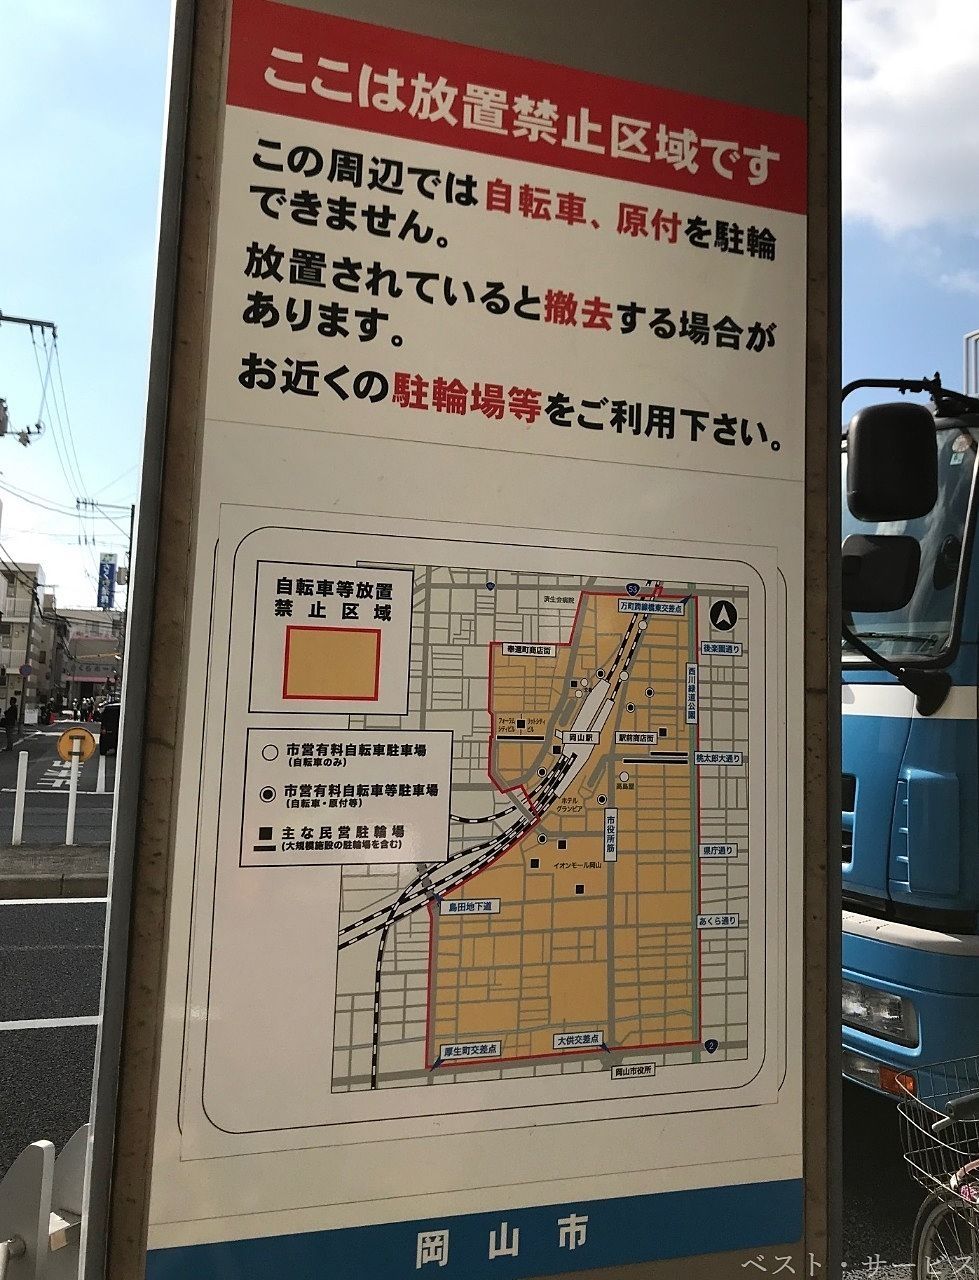 岡山市の条例で「自転車等放置禁止区域」が定められている場所があります